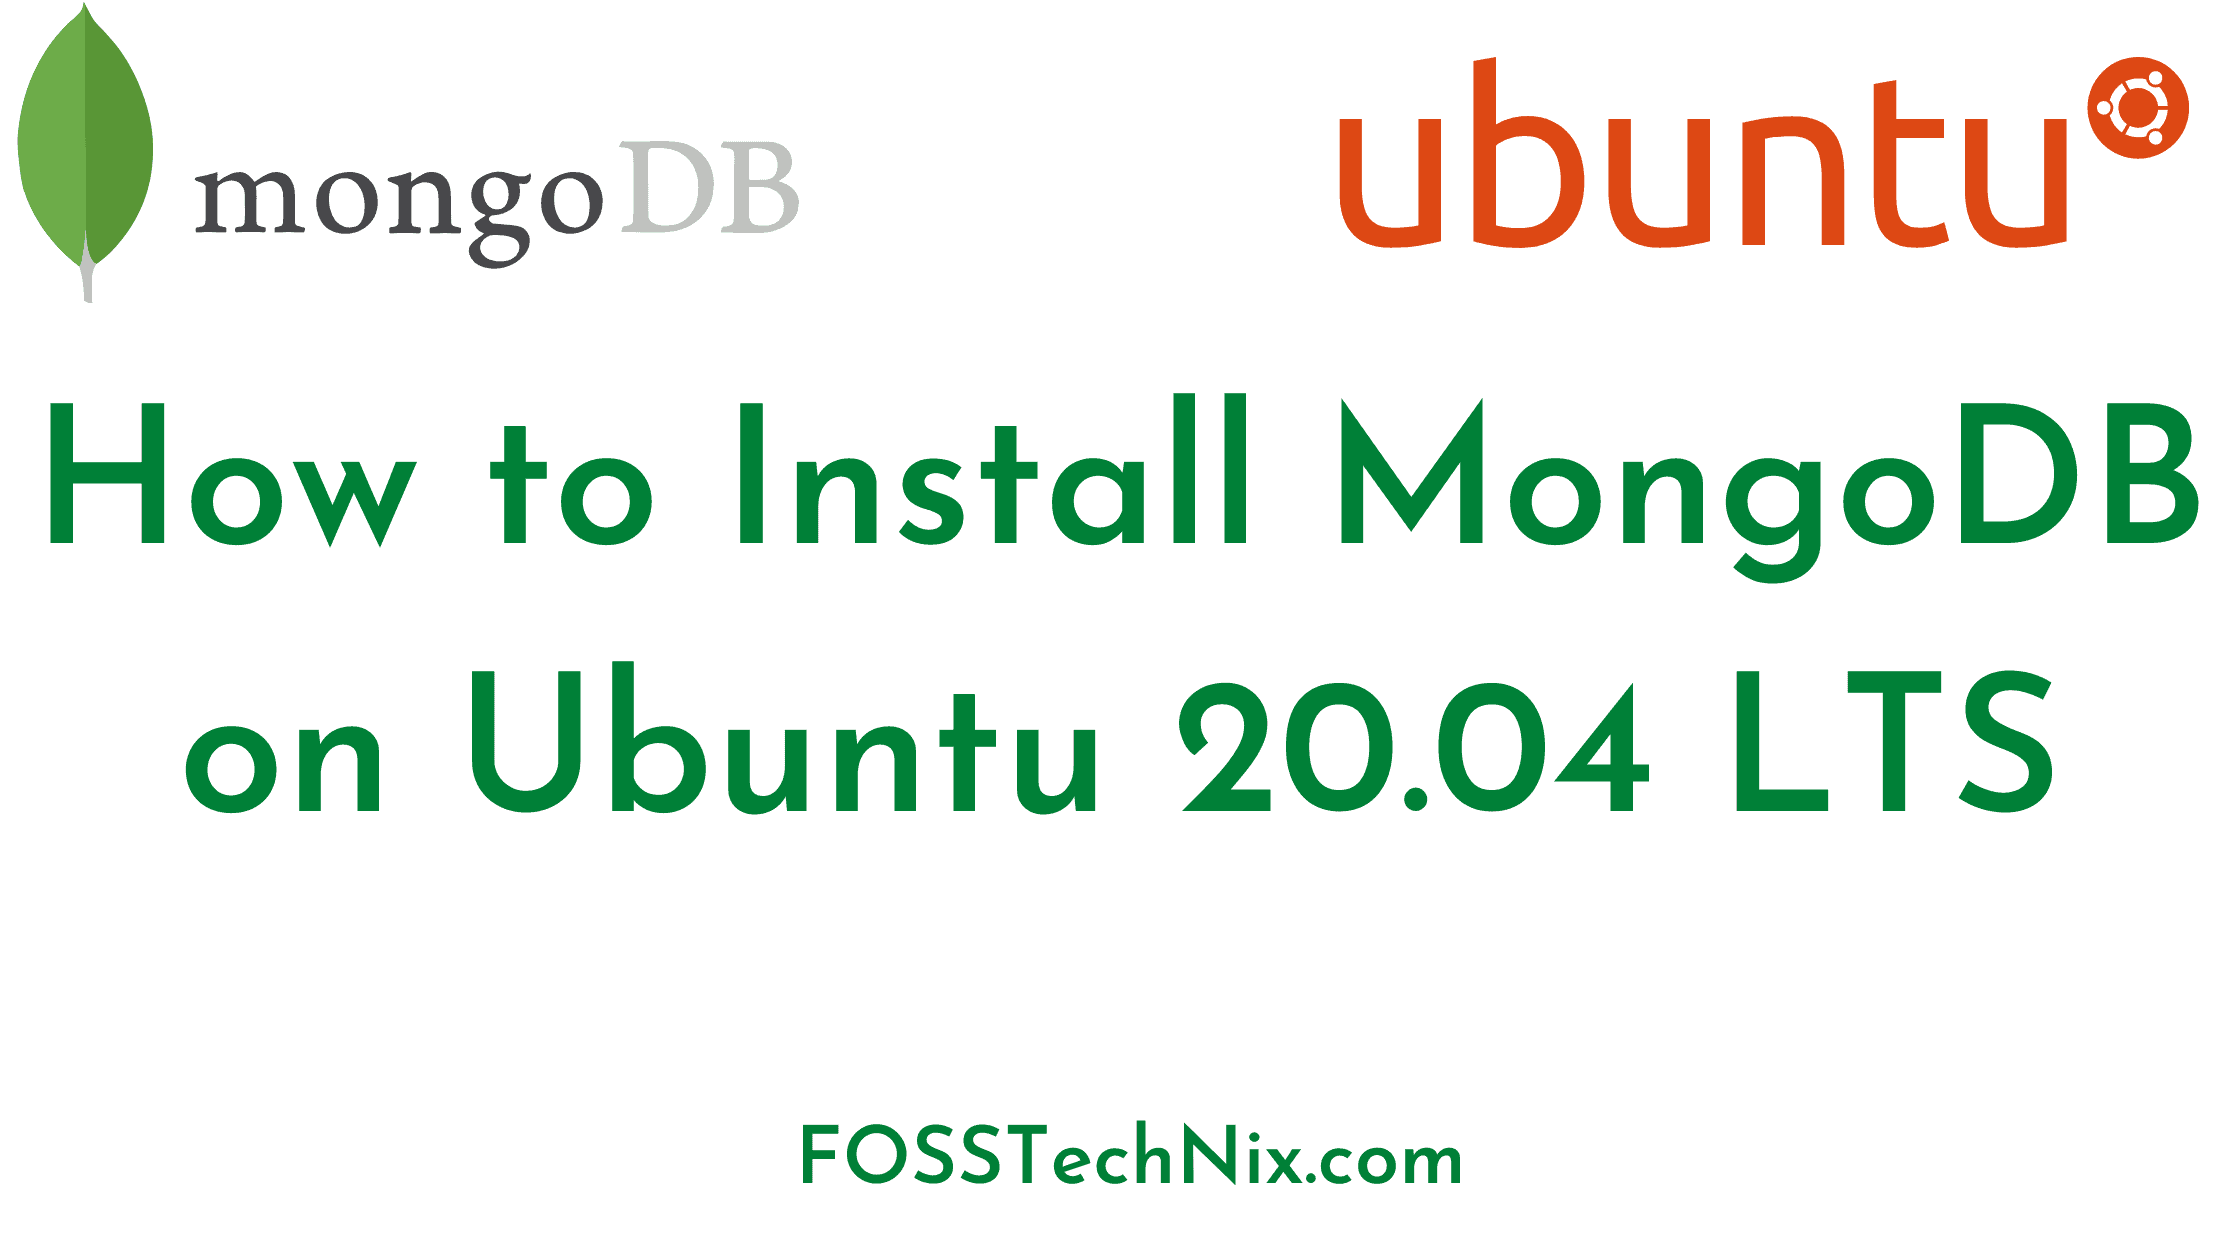 install mongo shell only on ubuntu